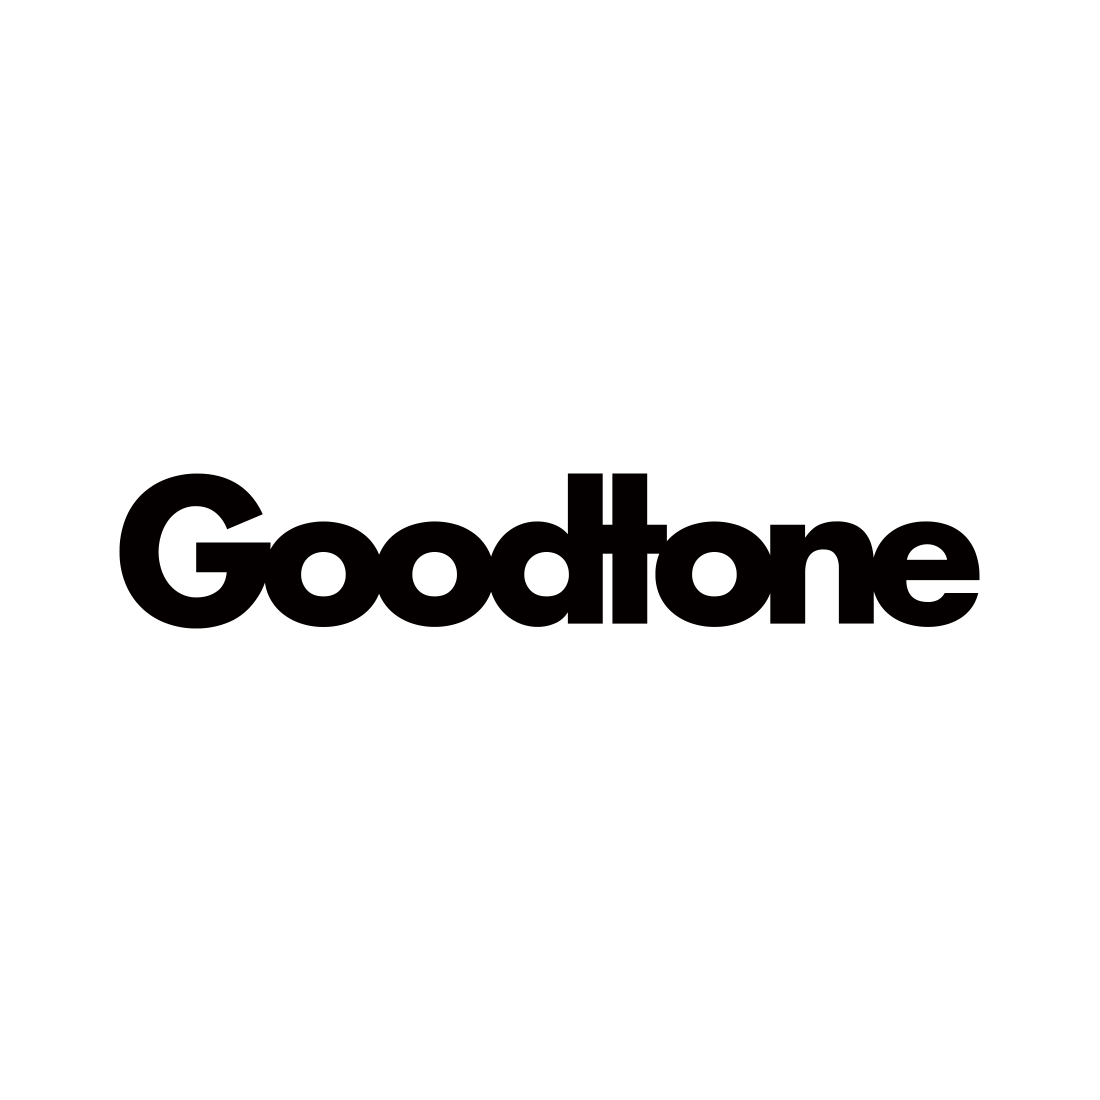 Goodtone